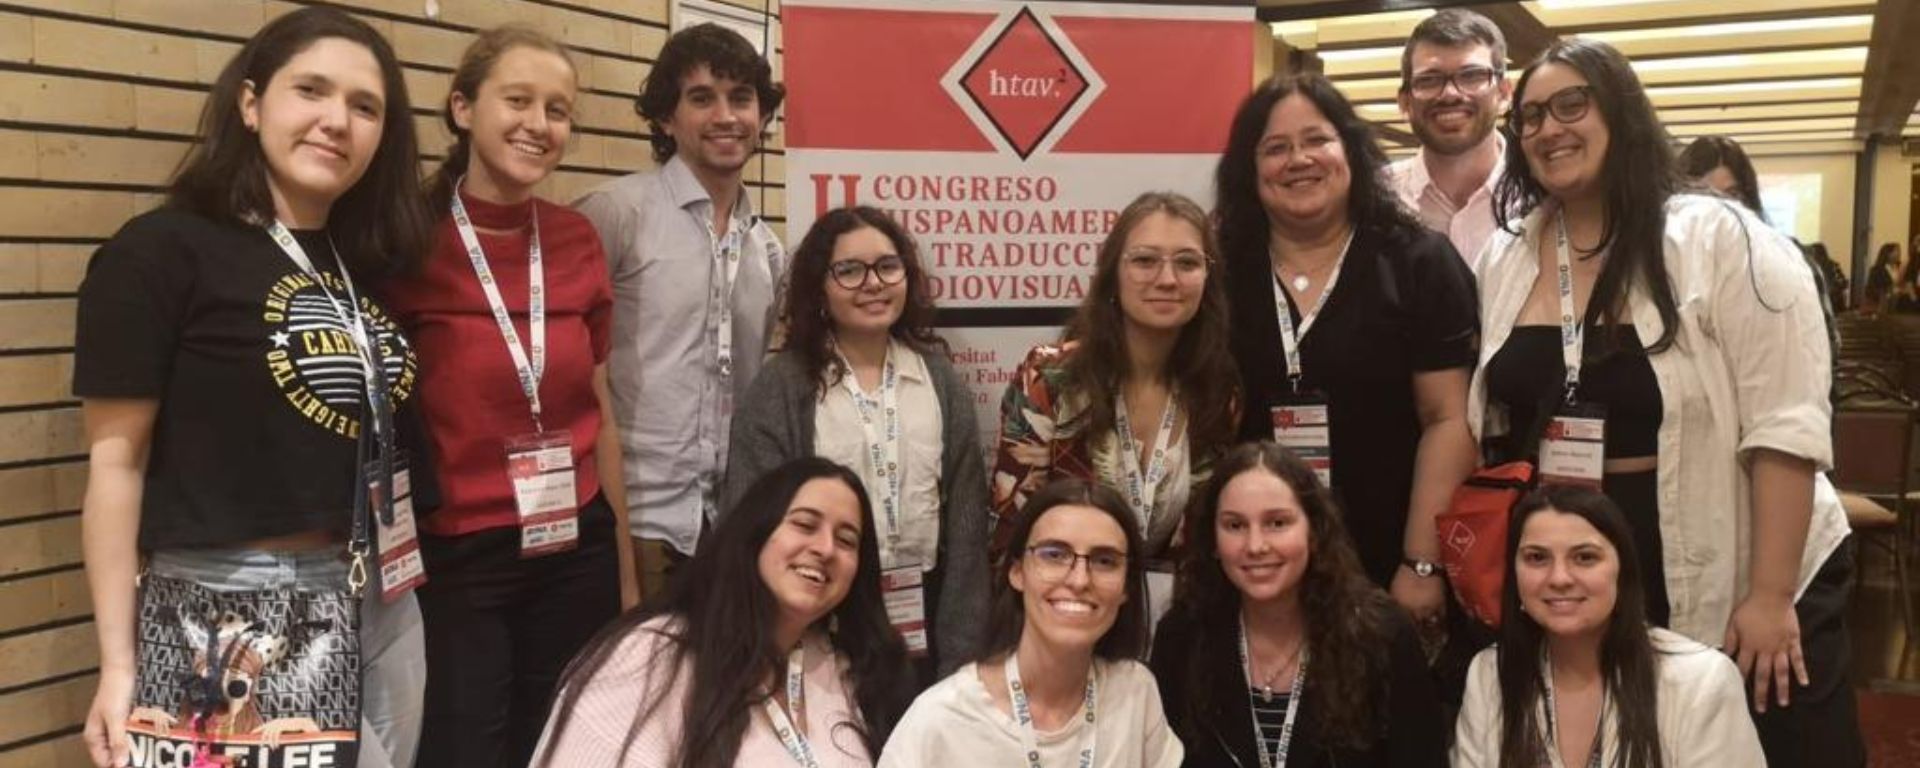 Docente y alumni de la UM participó en el II Congreso Hispanoamericano de Traducción Audiovisual